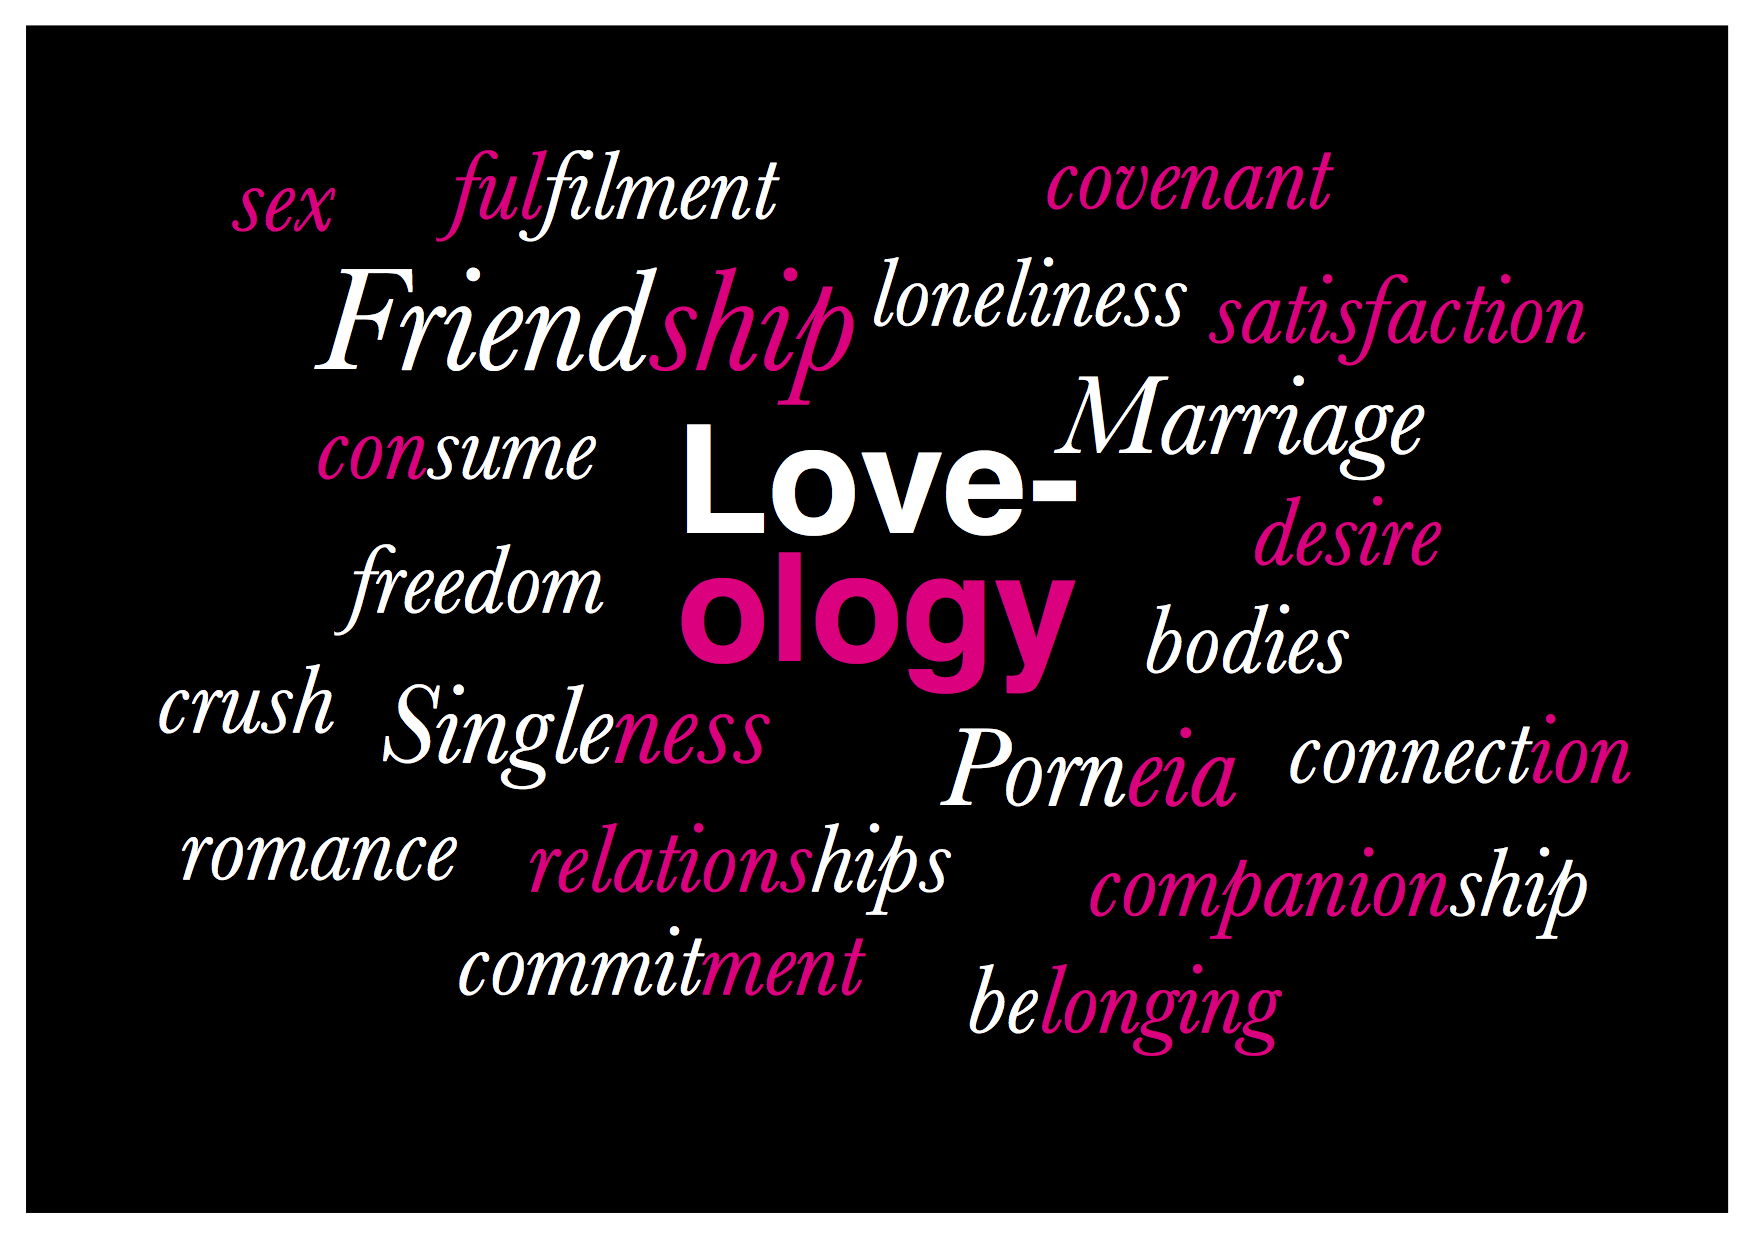 loveology slide.jpg